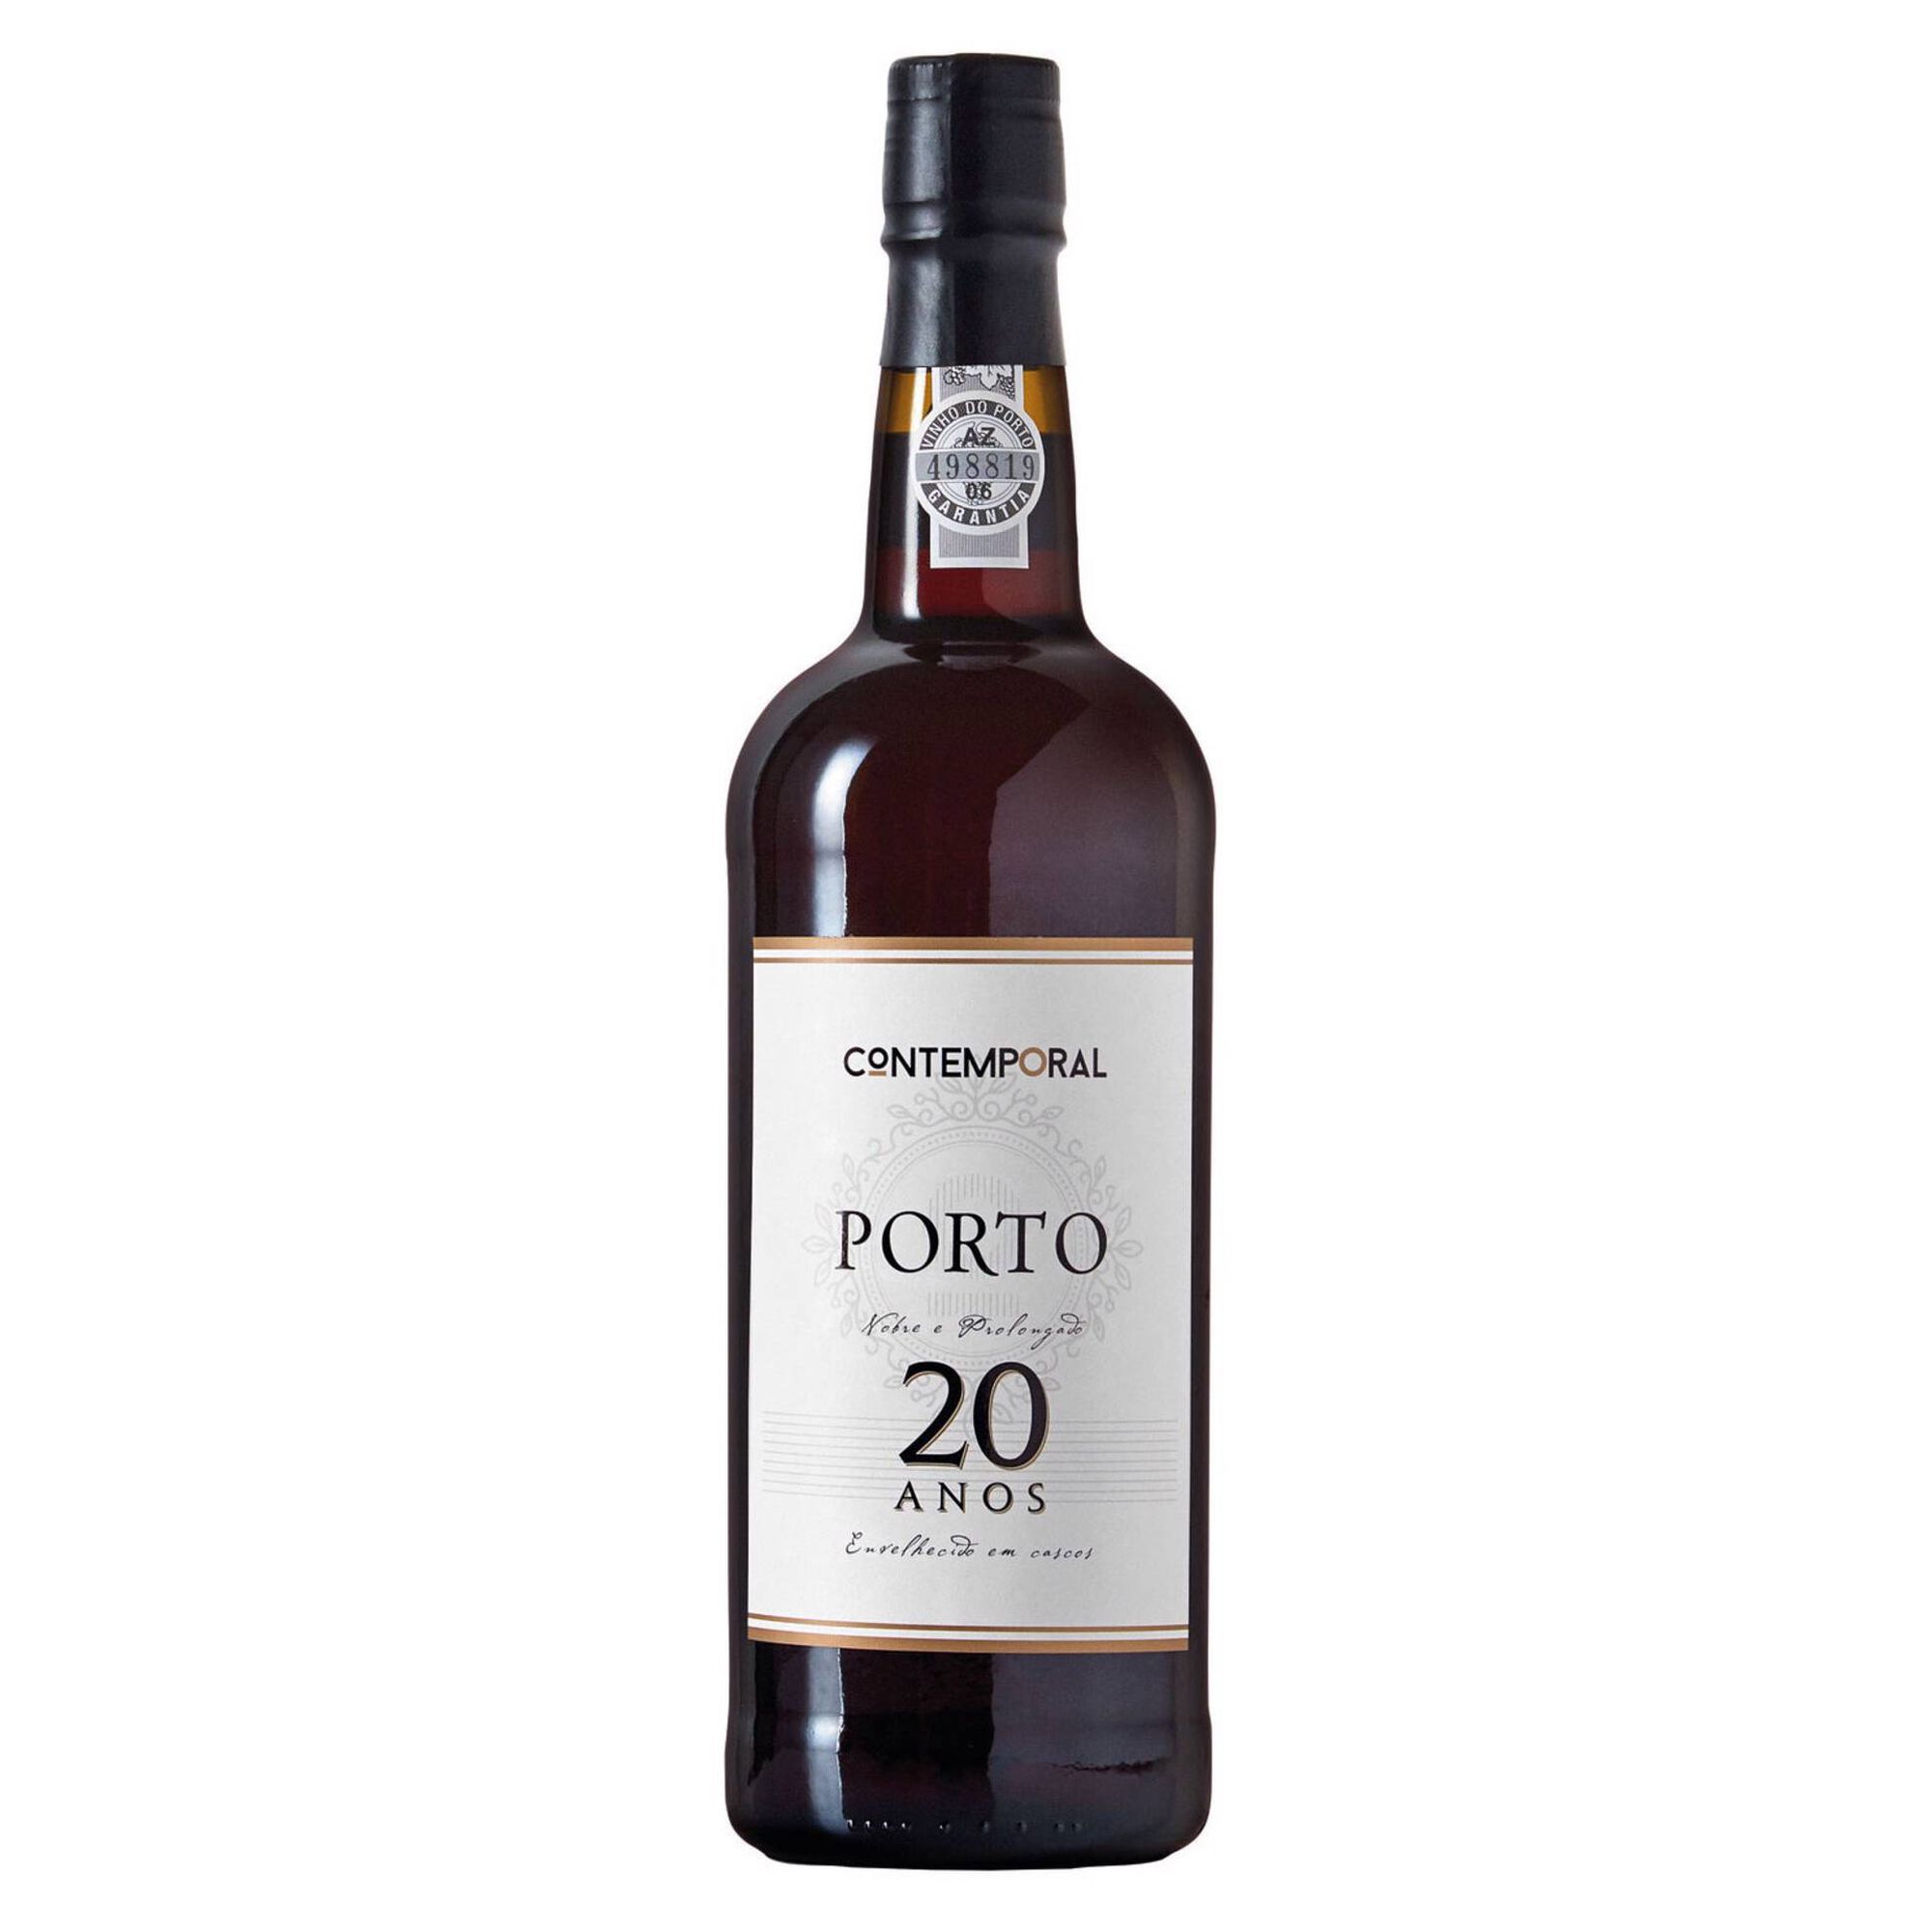 Contemporal Vinho do Porto 20 Anos